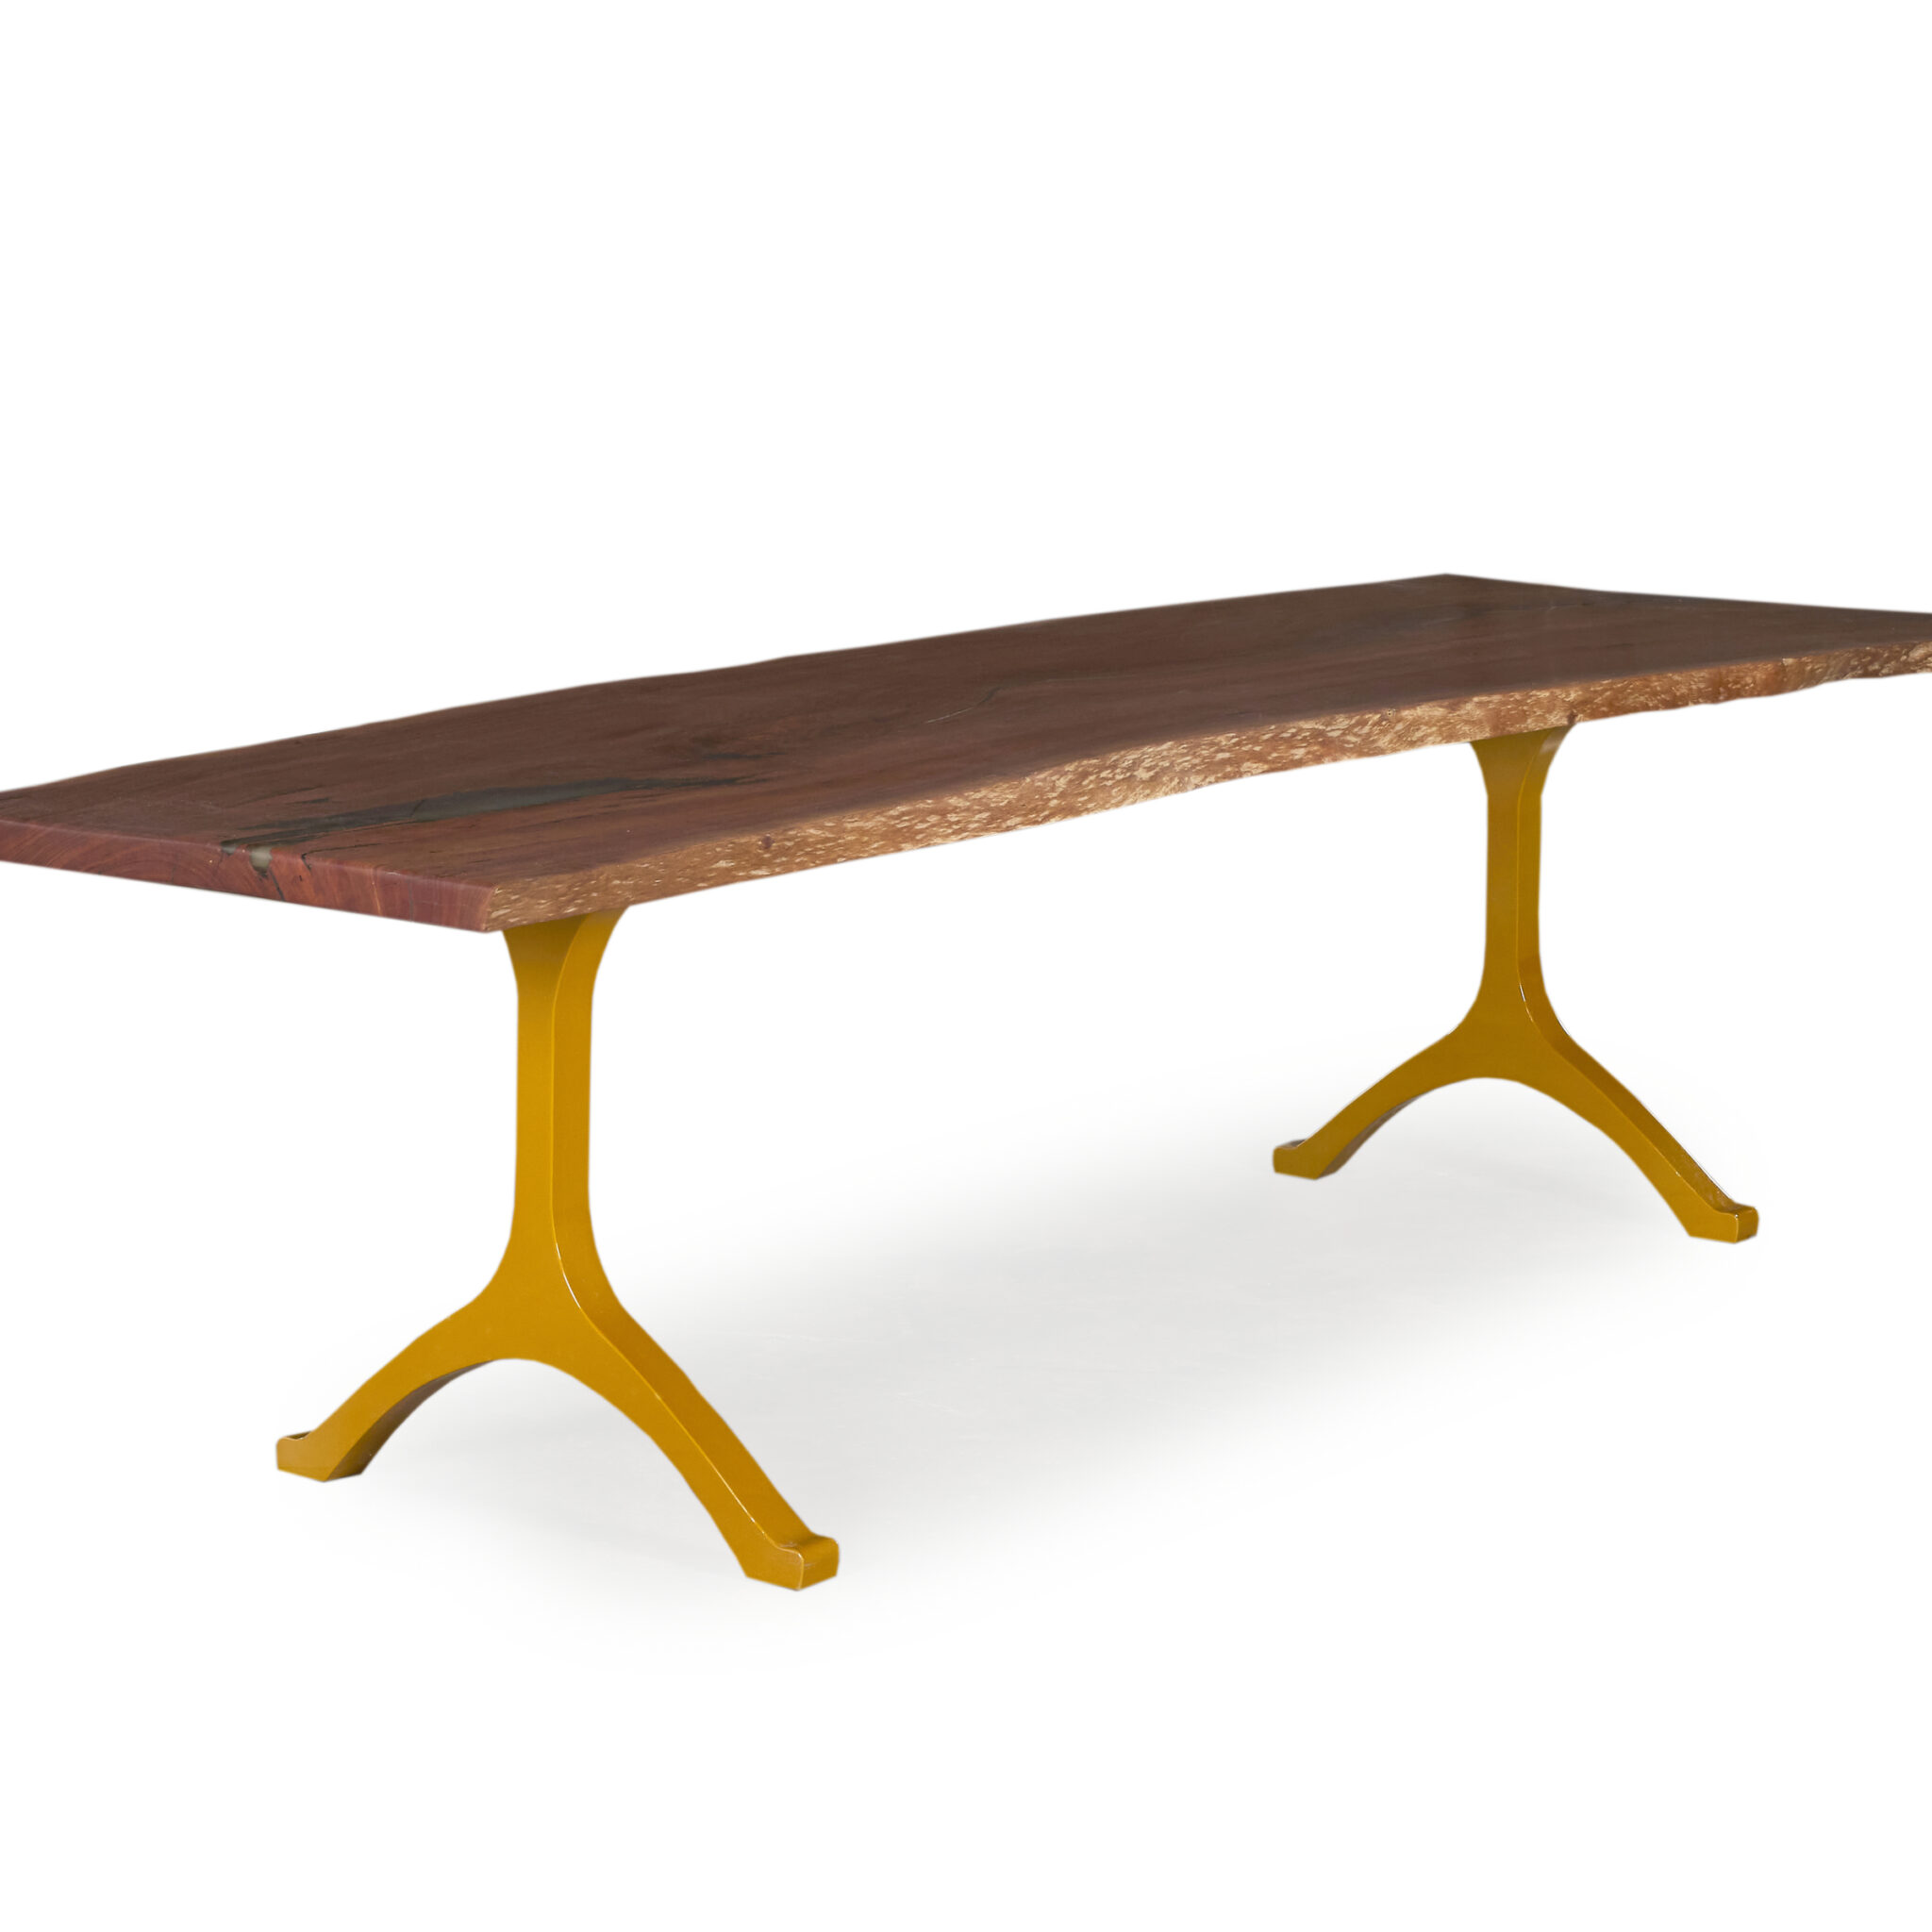 Versa Dining Table - Redgum timber, natural edge design, Wishbone Leg Gold base